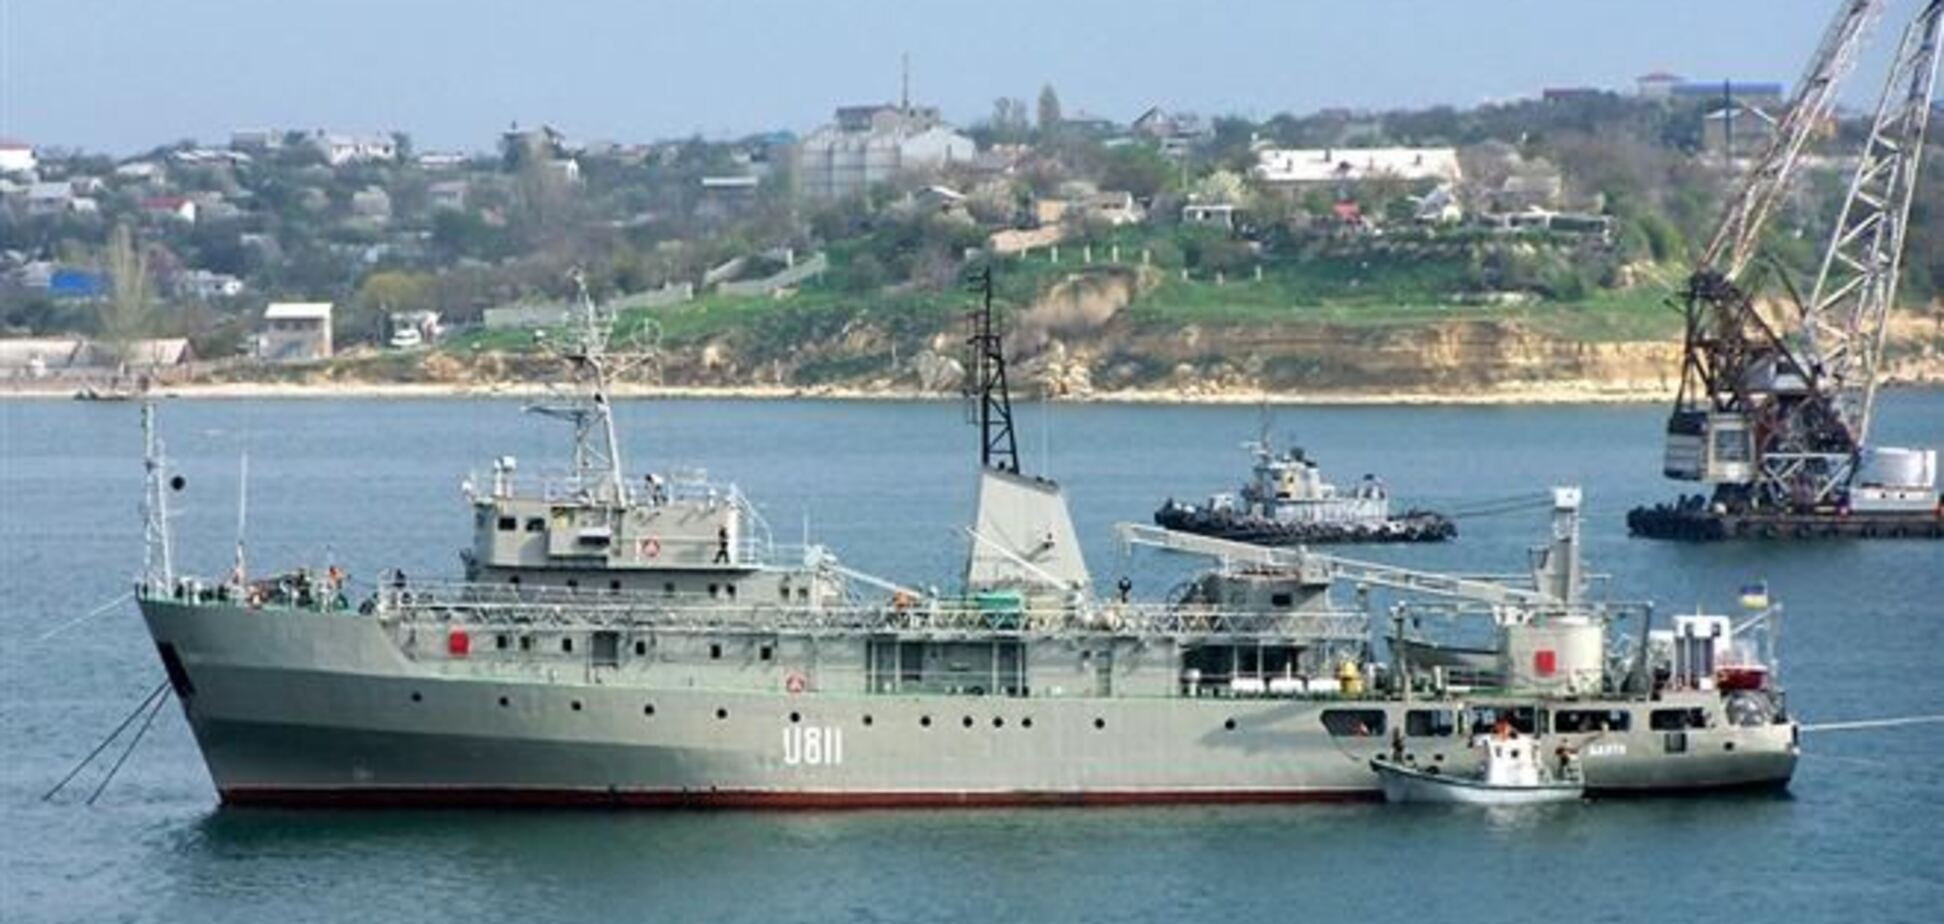 Ще одне українське судно передислоковано з Криму до Одеси